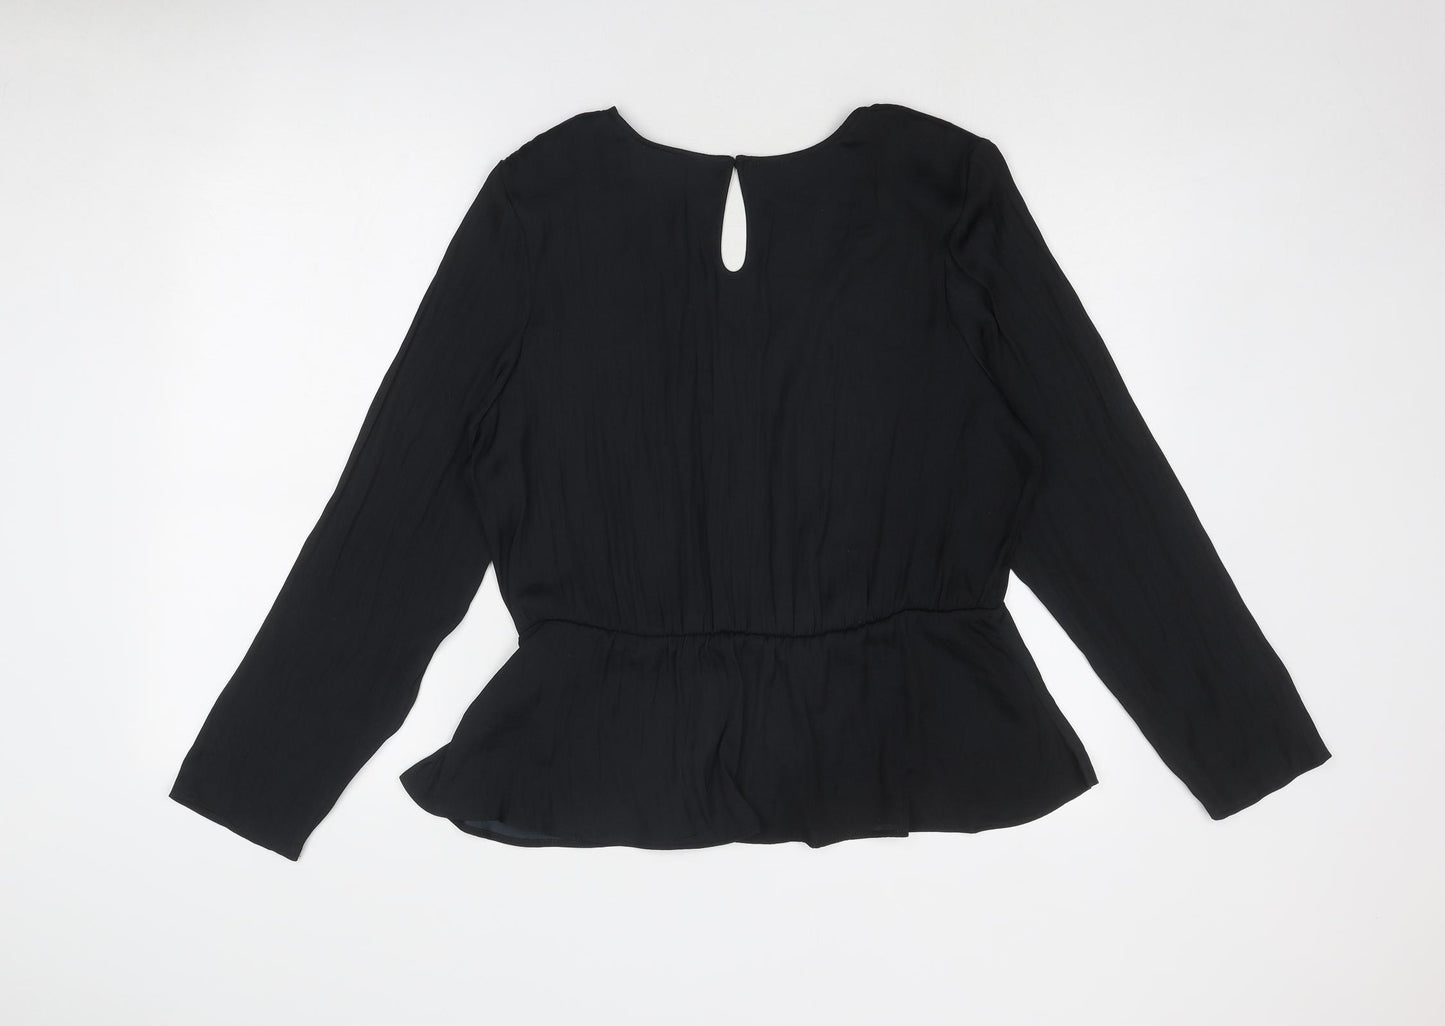 Marks and Spencer Womens Black Polyester Basic Blouse Size 16 V-Neck